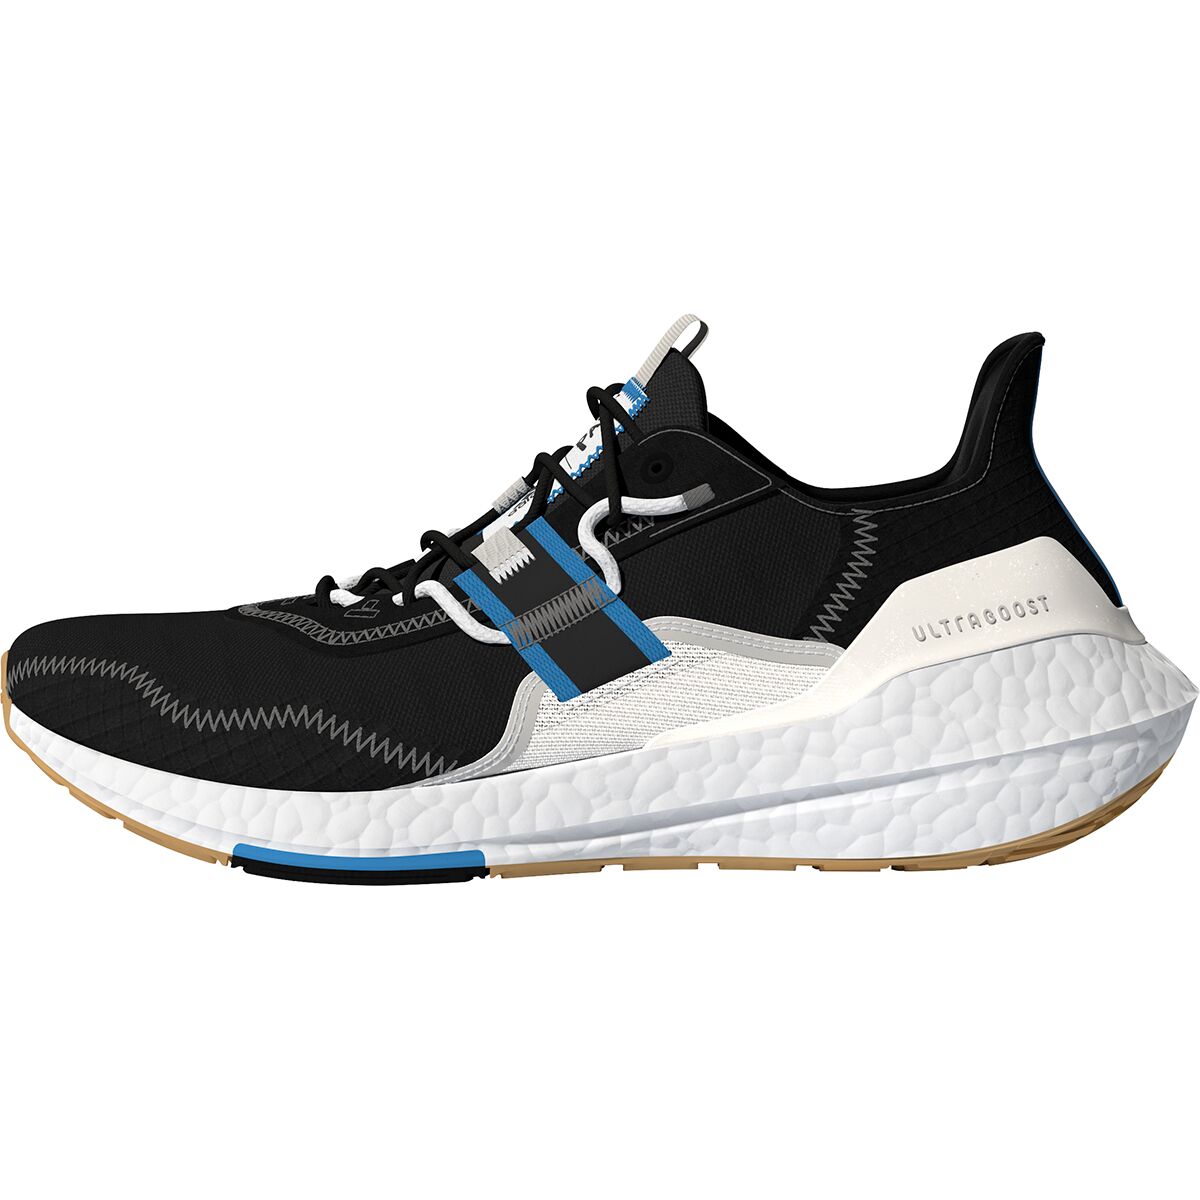 Adidas Ultraboost 22 x Parley Running Shoe - Men's